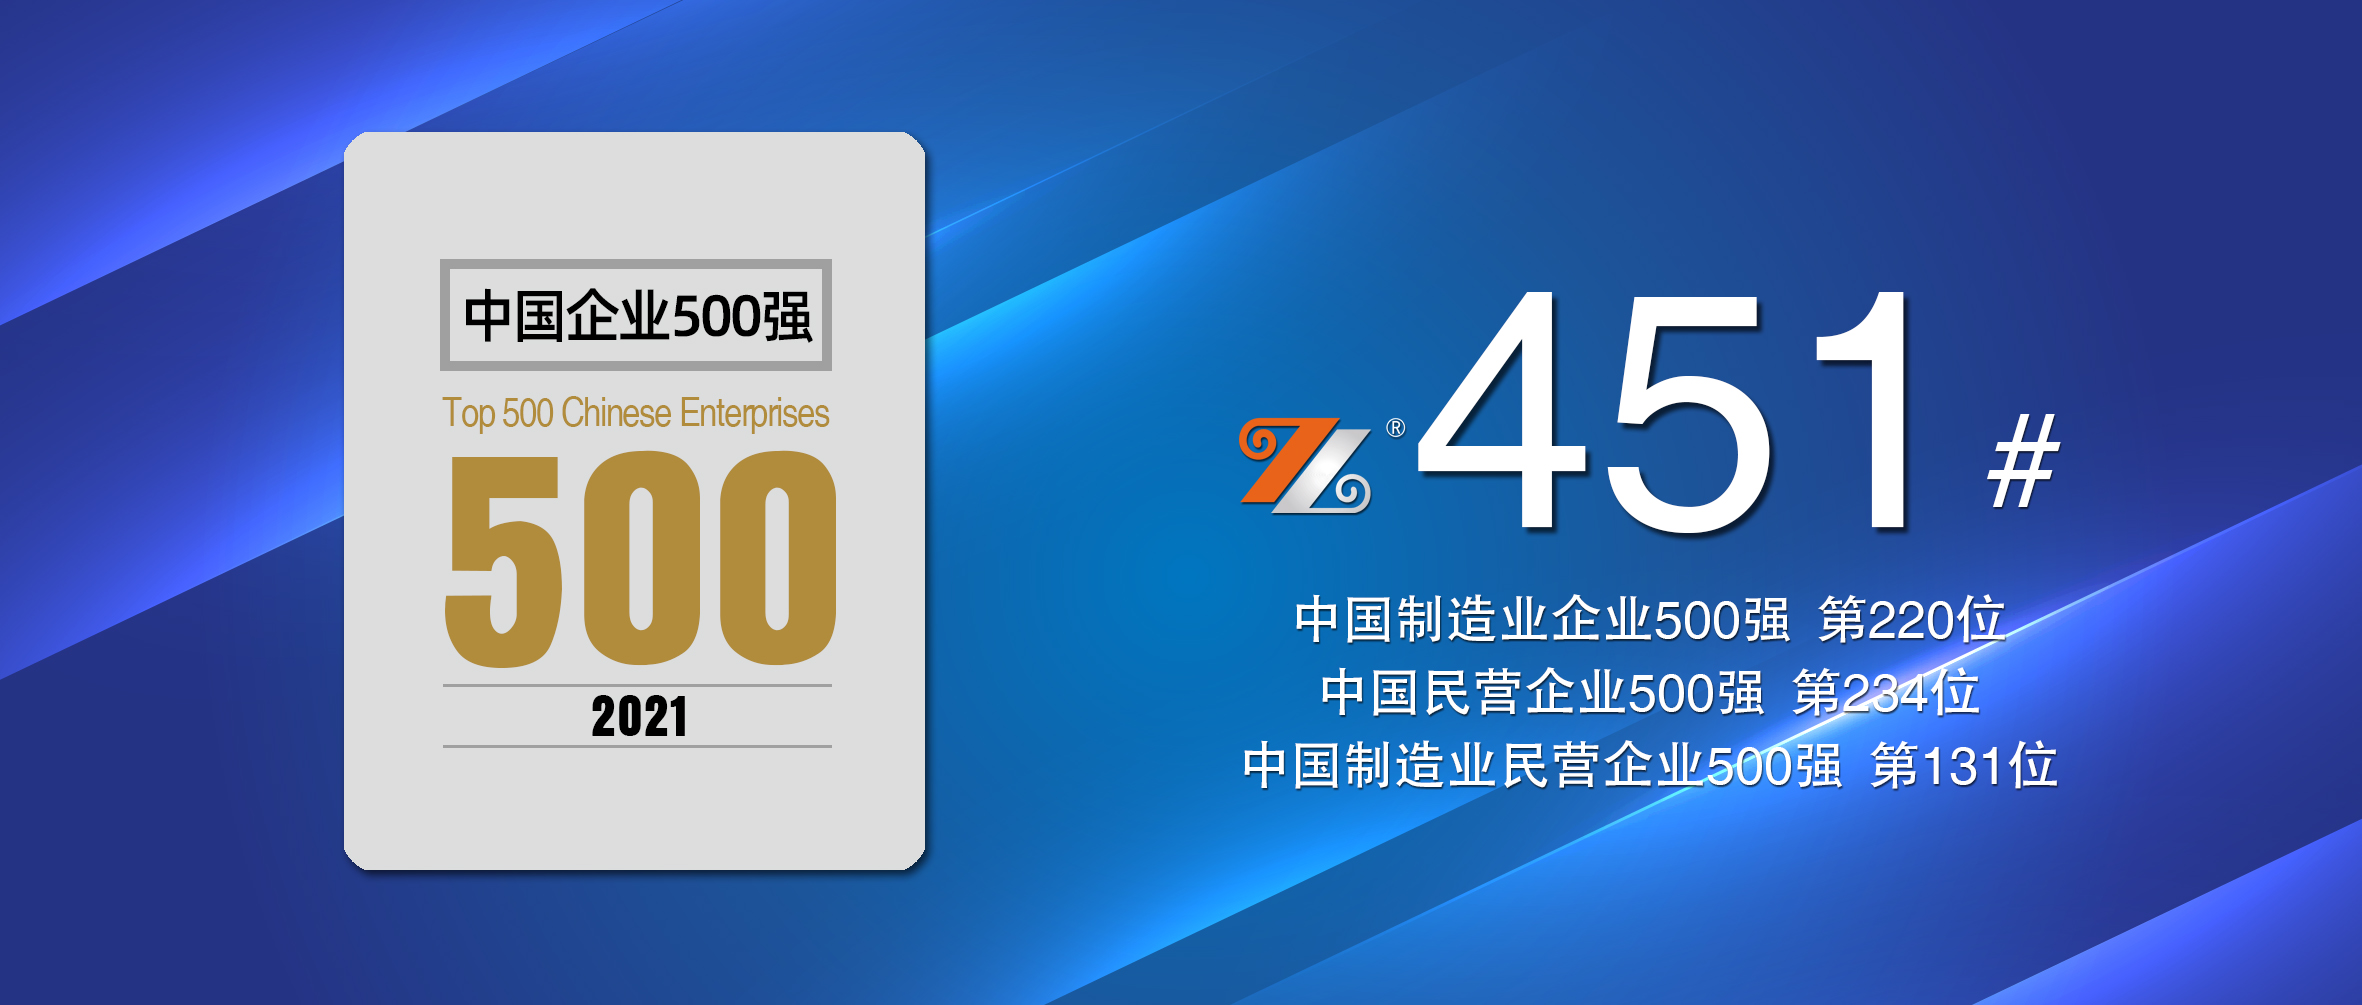 宏旺集团再度荣登“中国企业500强”，排名升至第451位